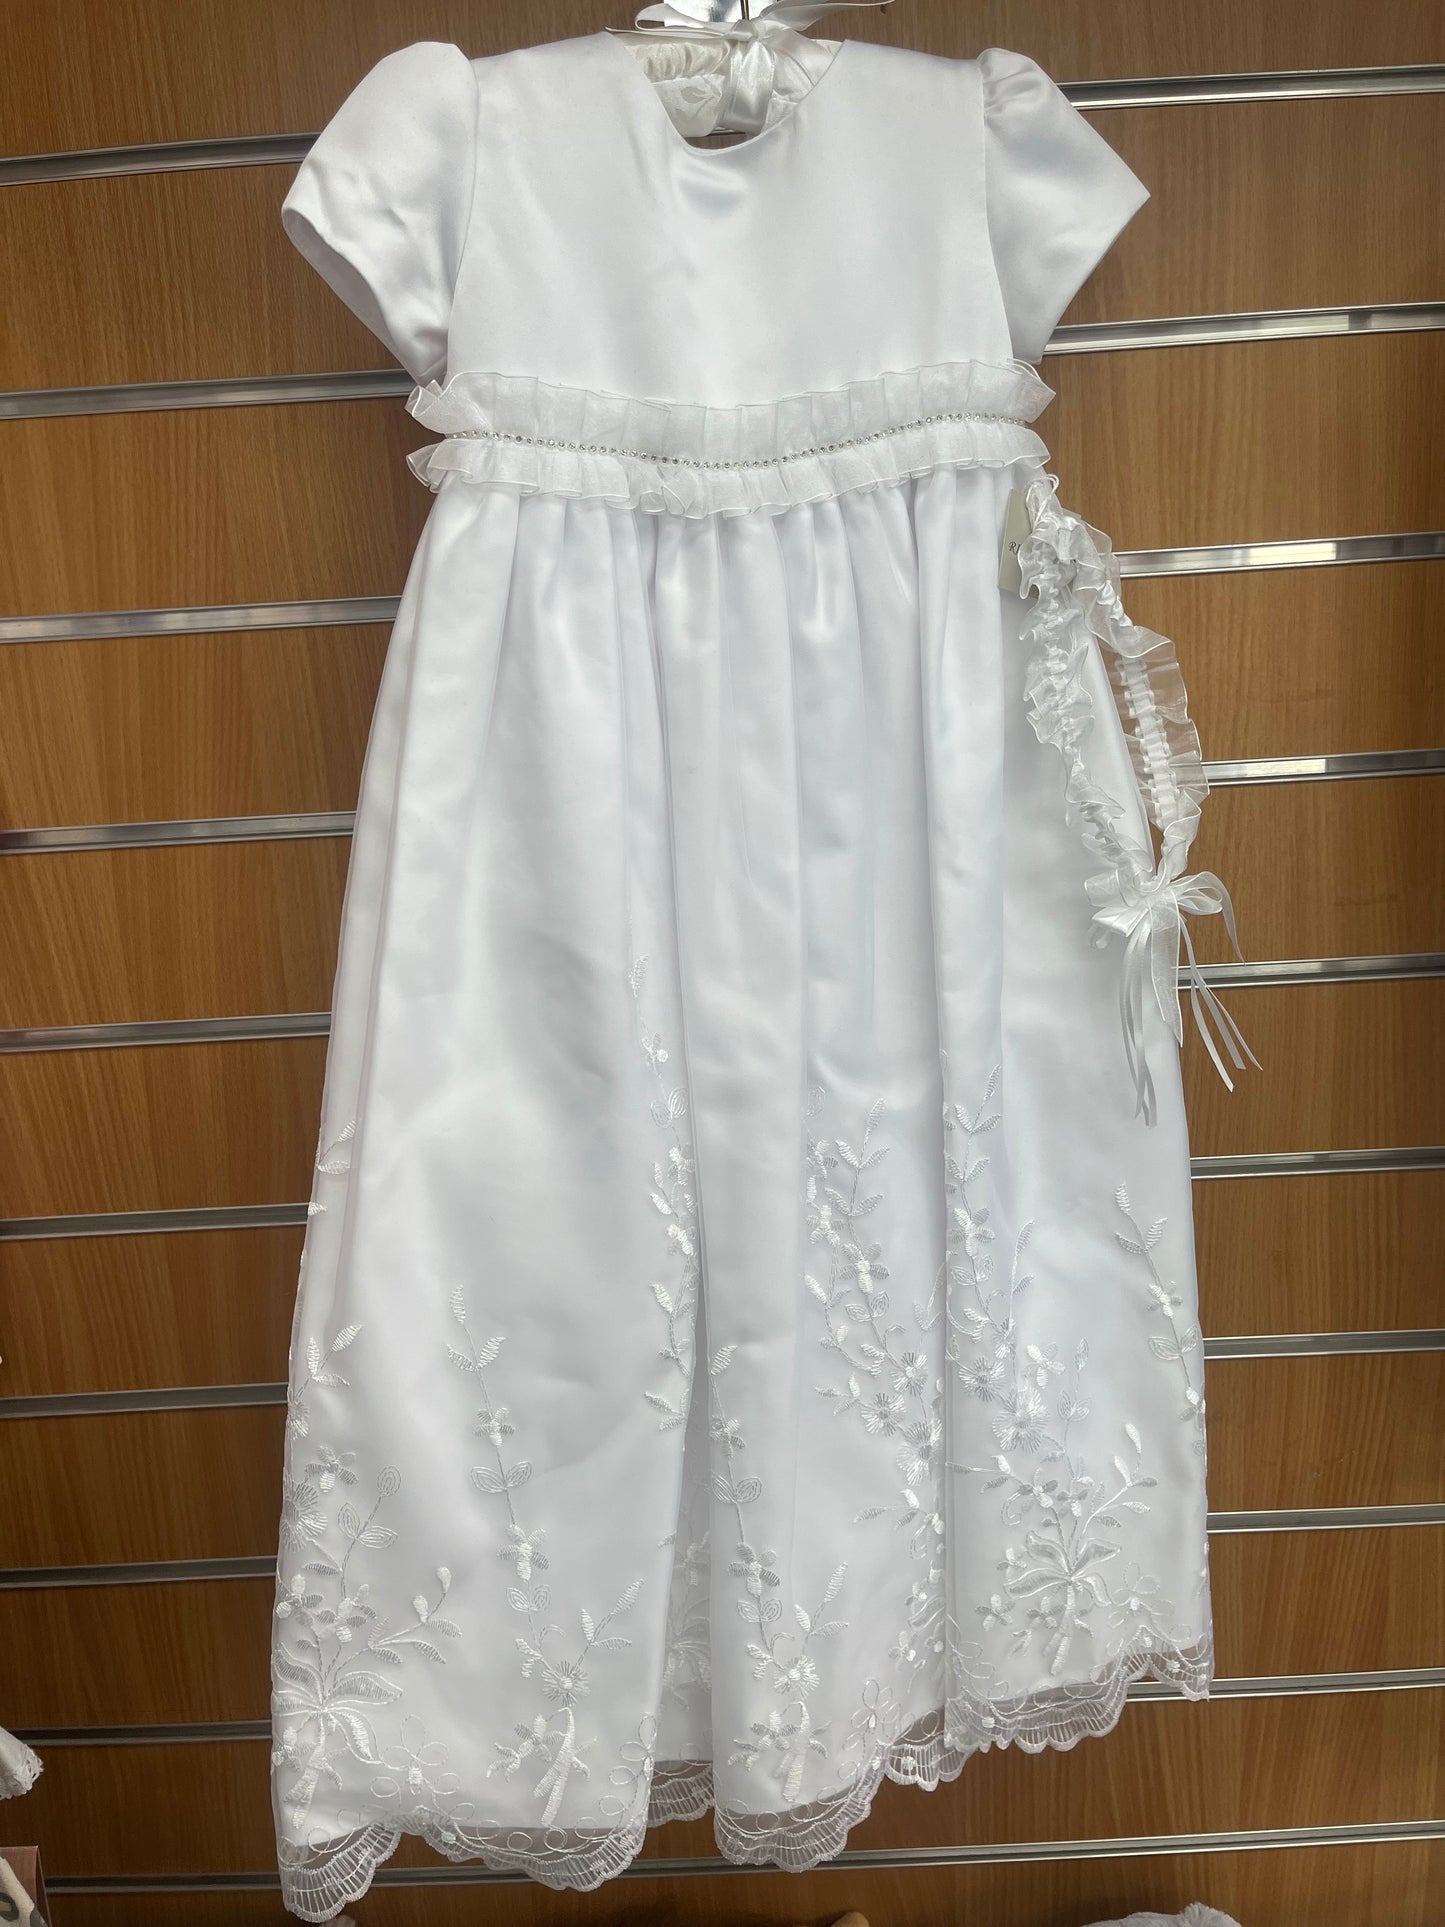 White Full length Christening Gown 6-12 Months